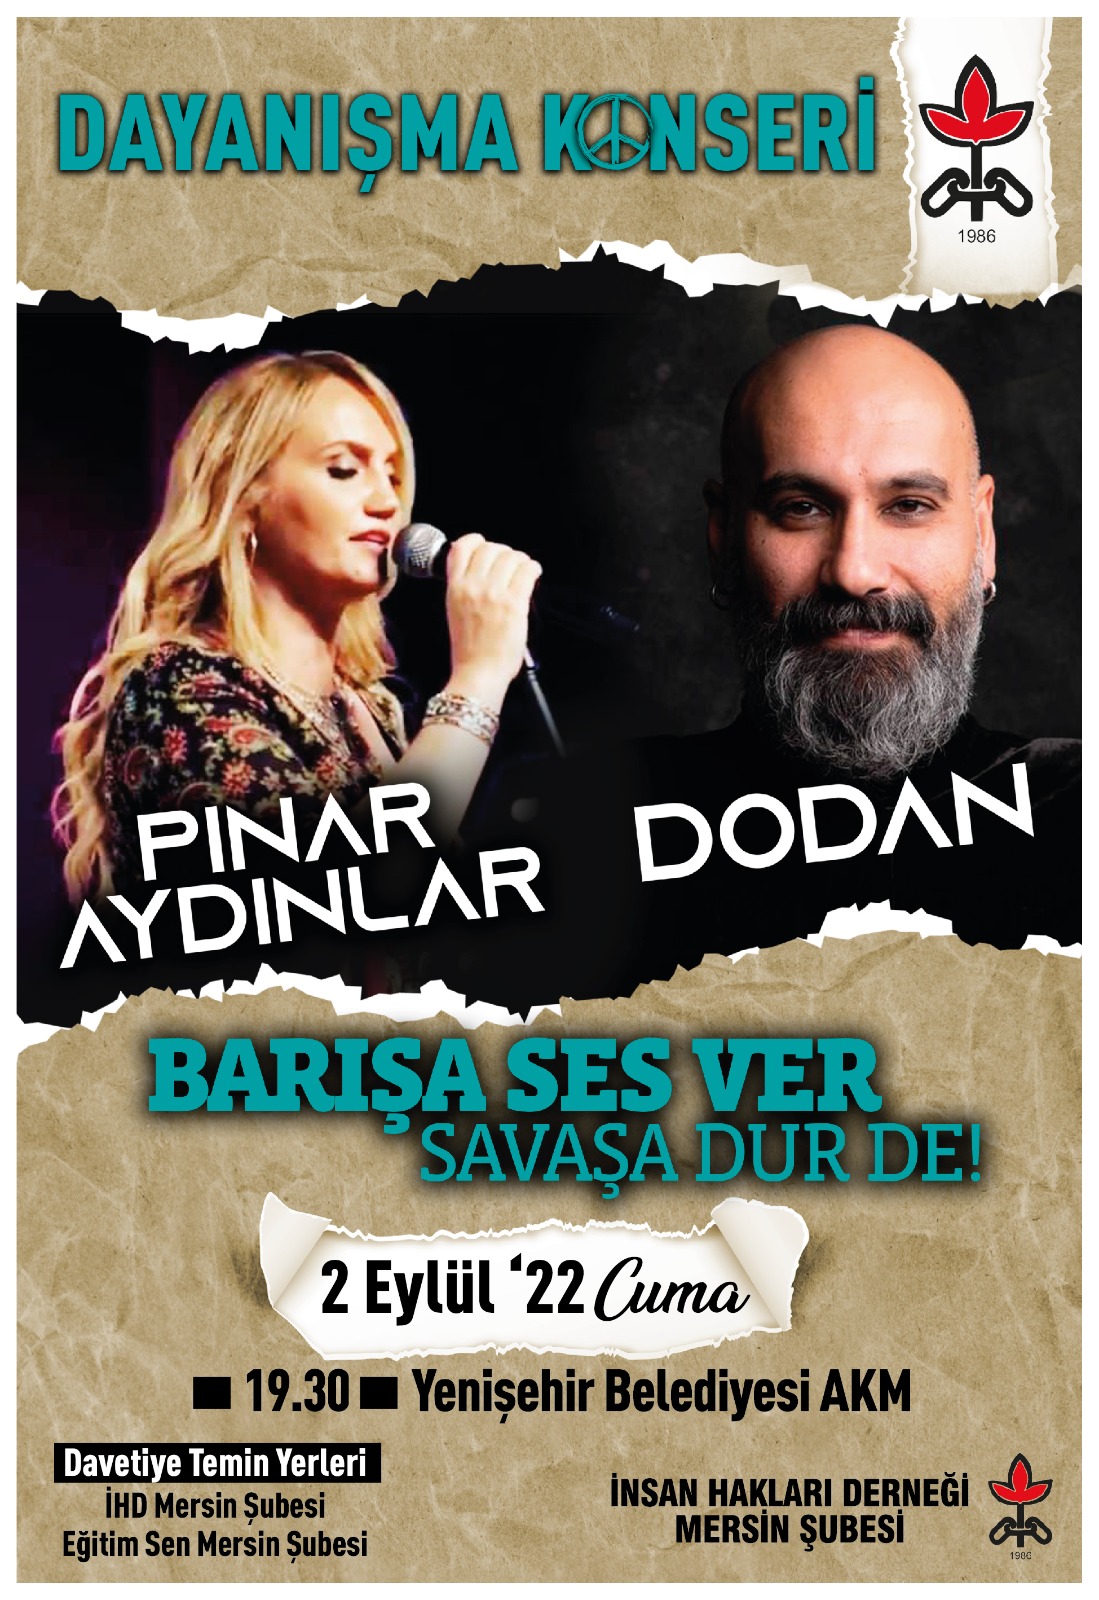 Pınar AYDINLAR (@PinarAYDINLAR) / Twitter